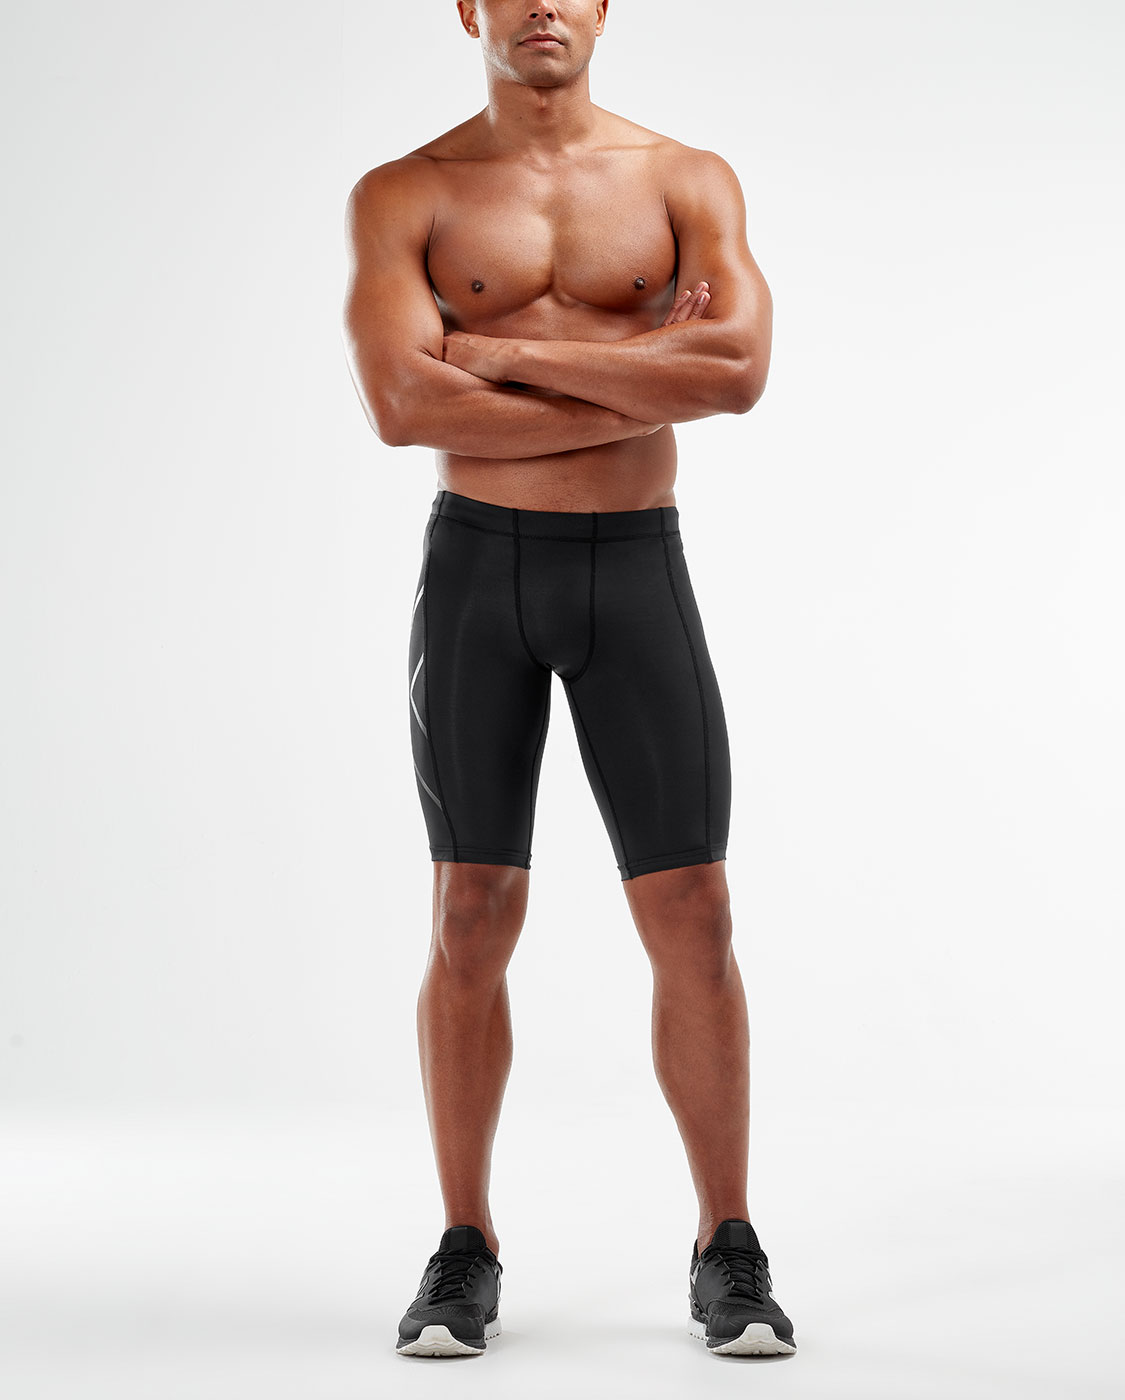 2XU Men's Compression Shorts - Black/Nero